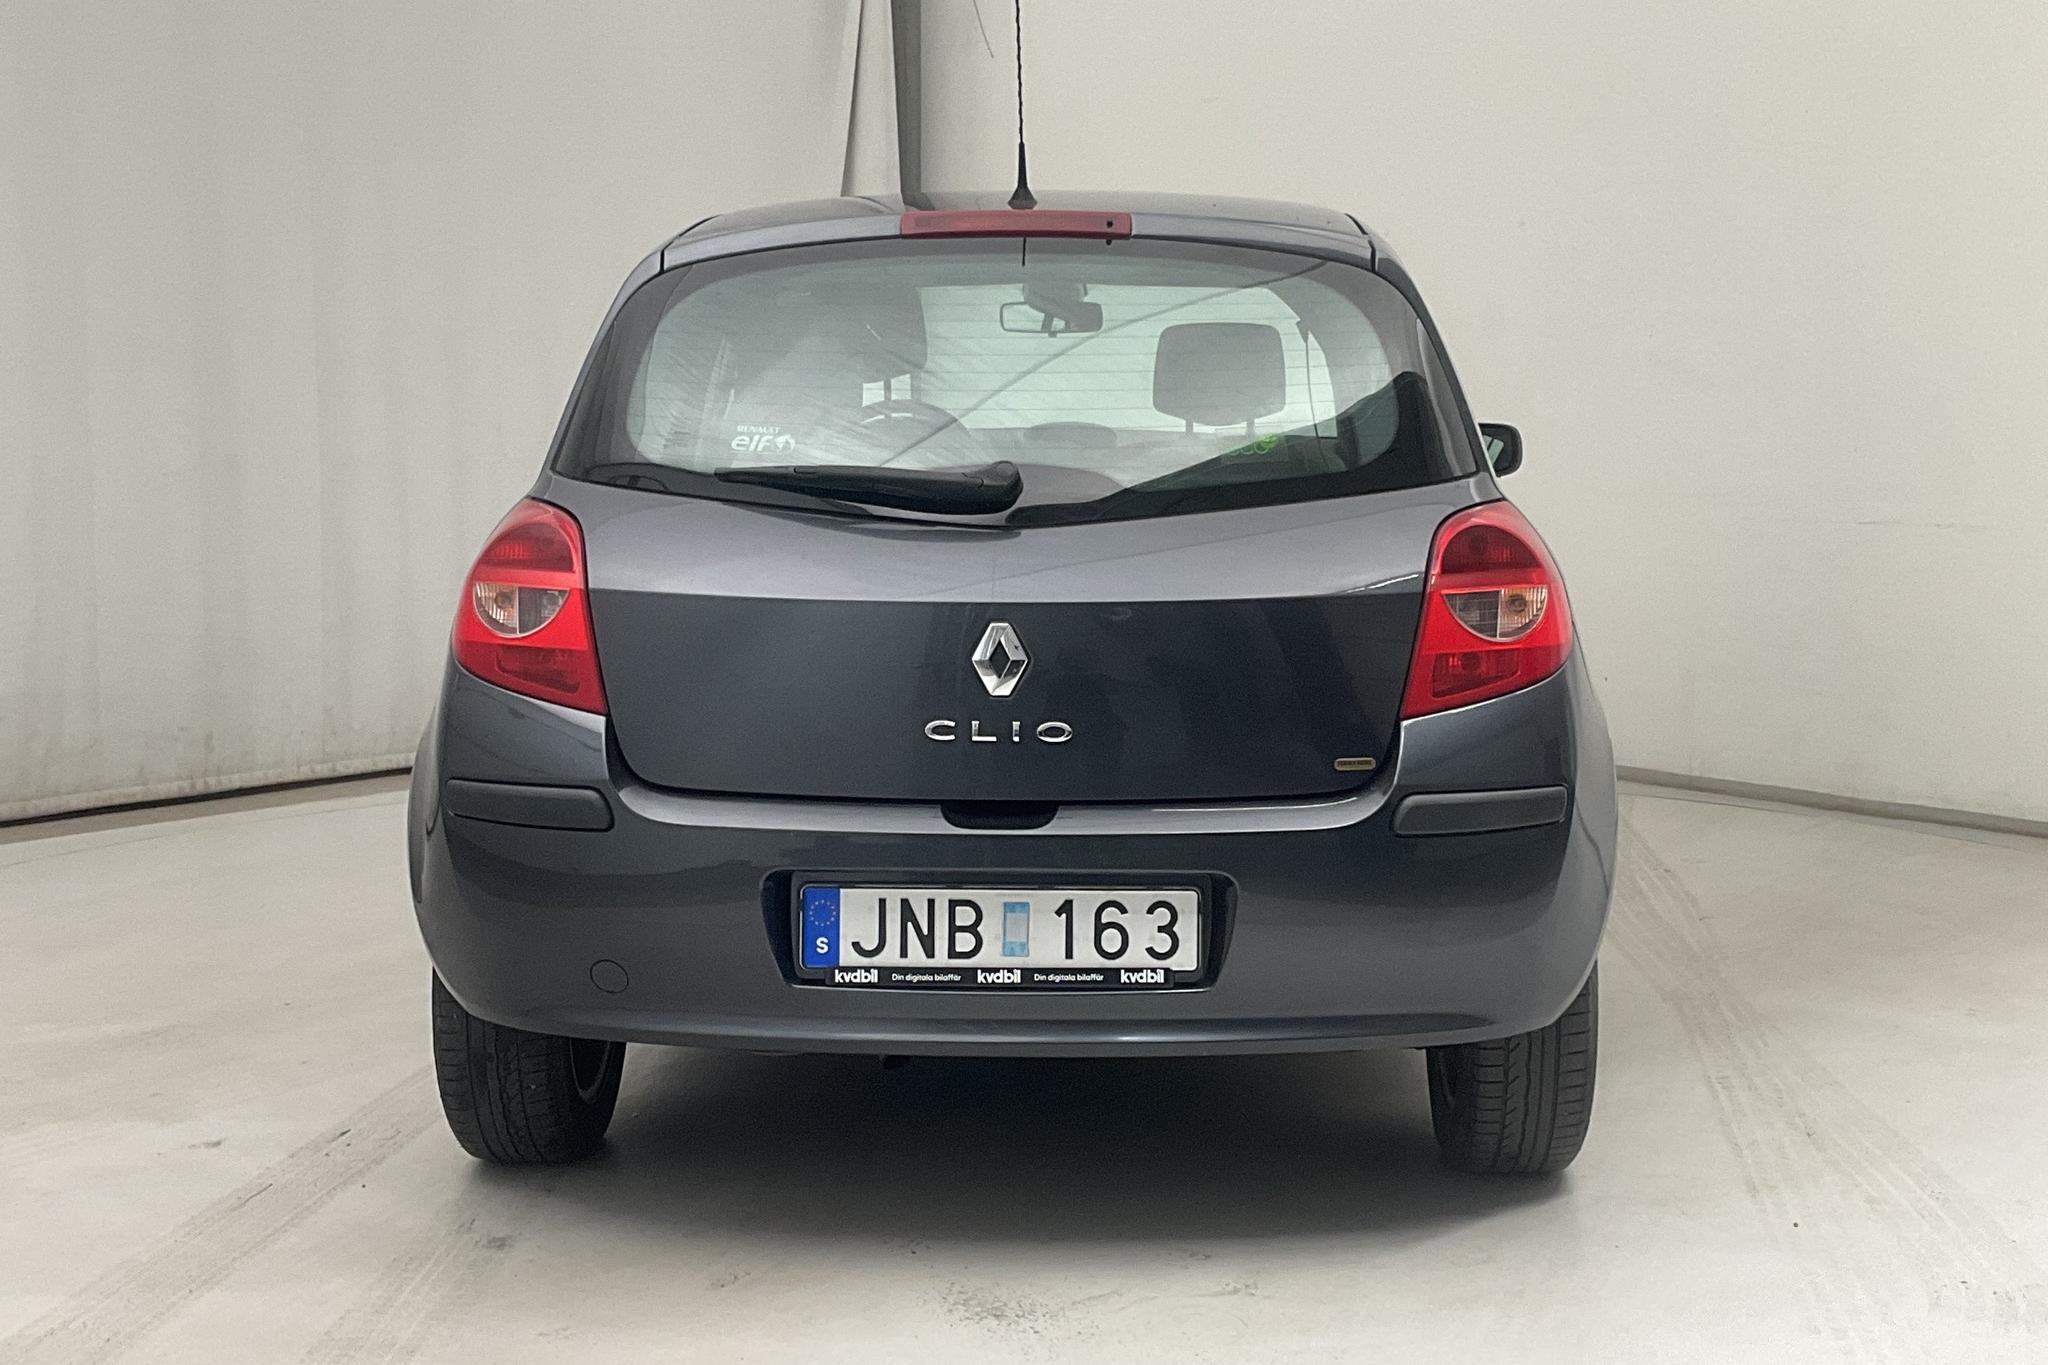 Renault Clio III 1.2 Flex Fuel 5dr (75hk) - 40 910 km - Manual - Dark Grey - 2009